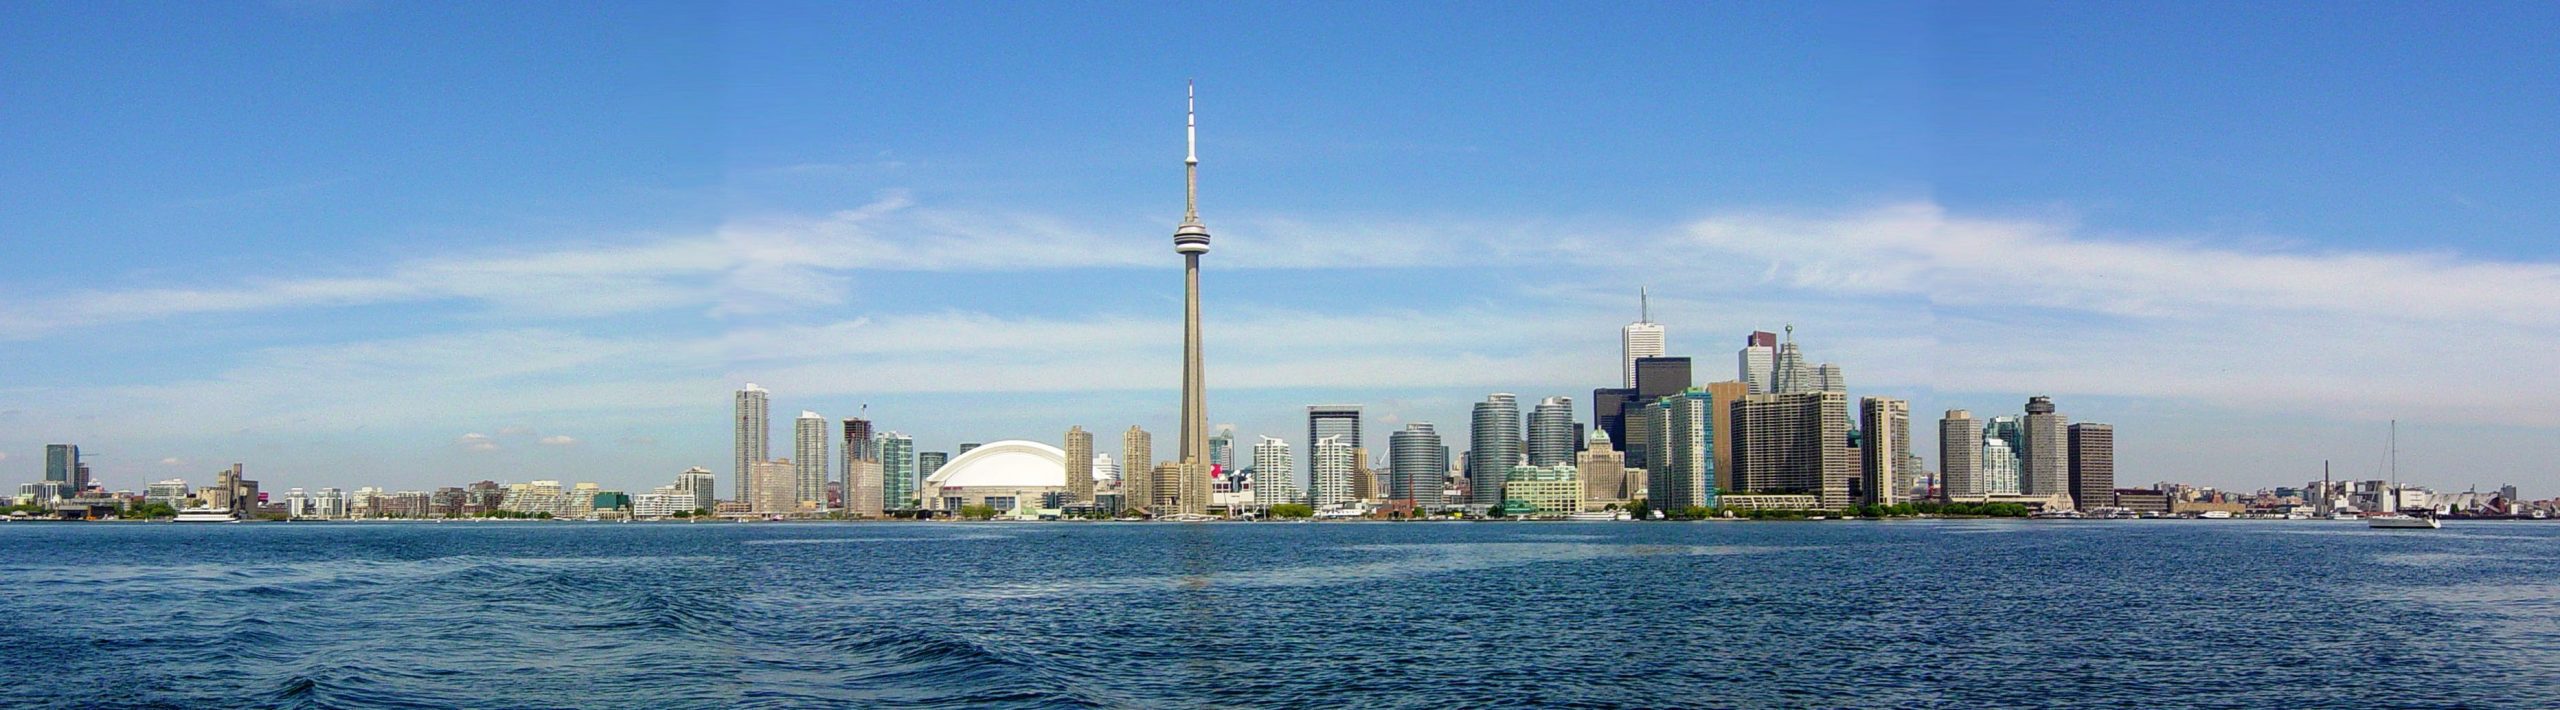 Toronto-Skyline_Bandeau